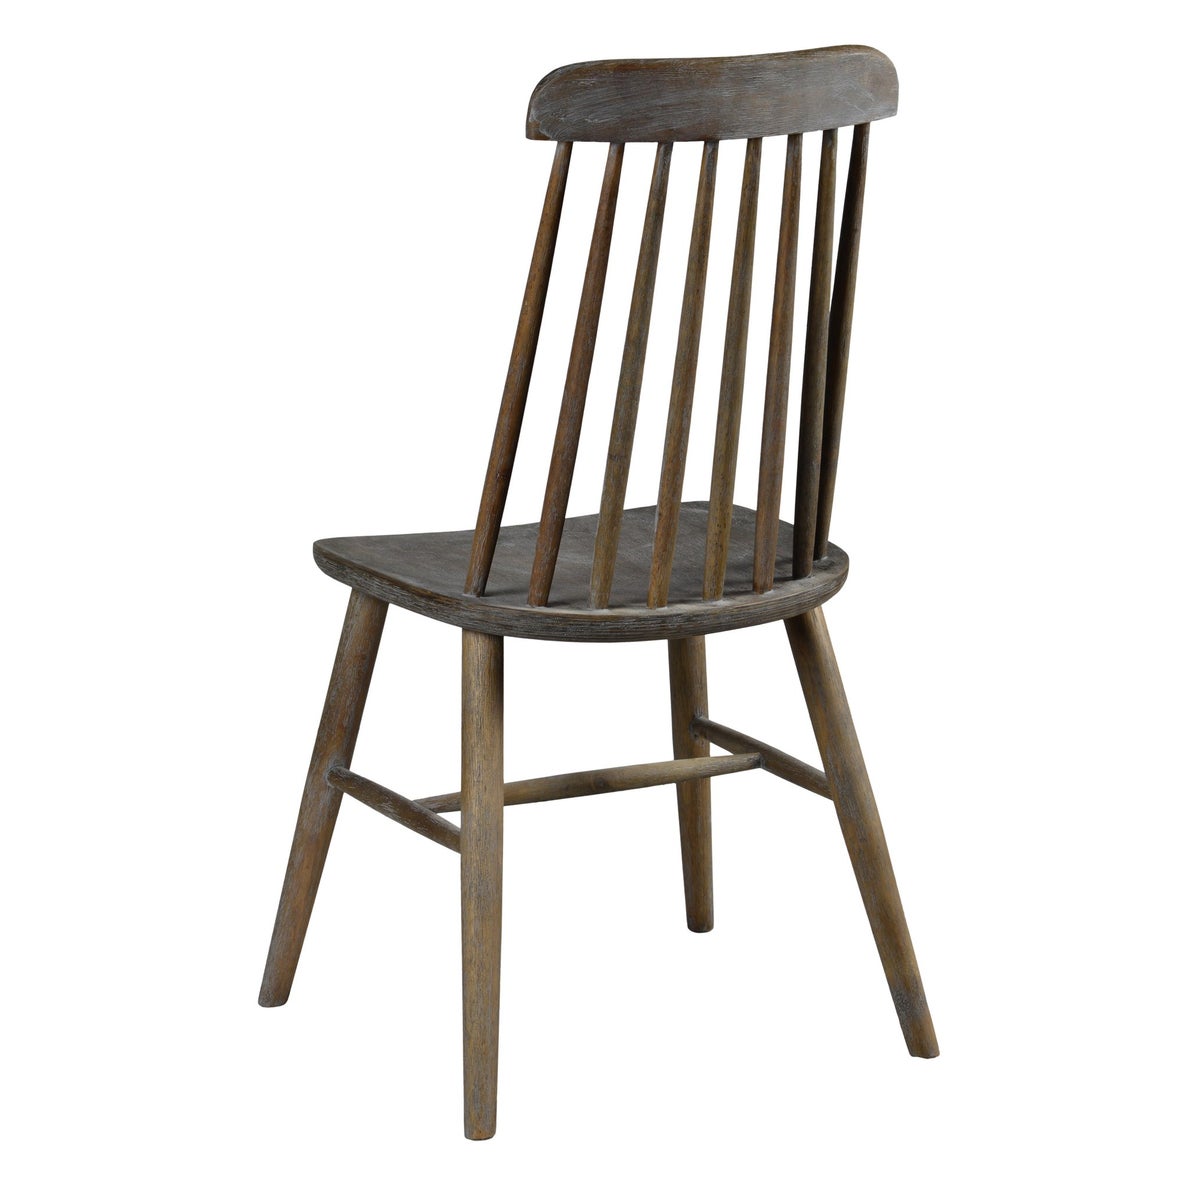 -Lloyd Chair (Brown Wash)